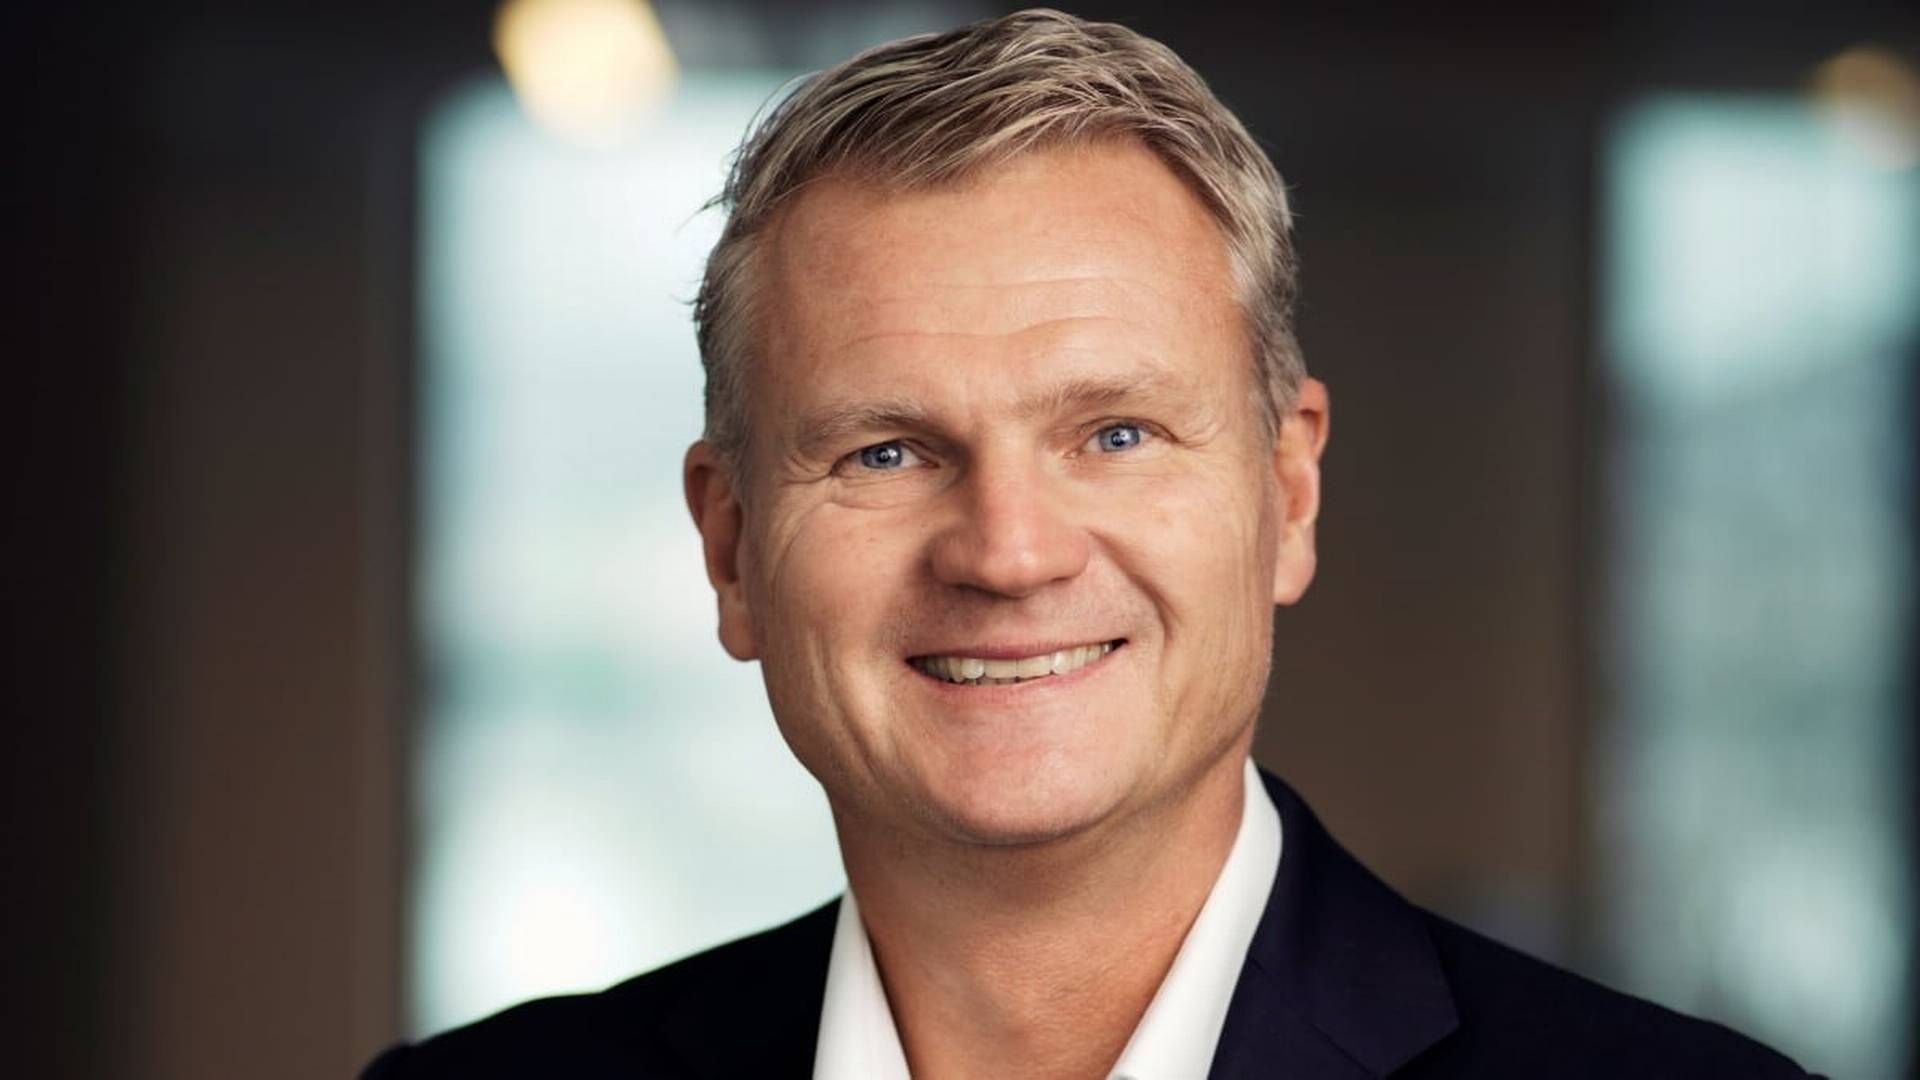 Patrik Hansson er er i øjeblikket landedirektør for Arlas tyske marked, men tiltræder den nye stilling fra 1. april 2022. Her indtræder han samtidig i Arlas koncernledelse.